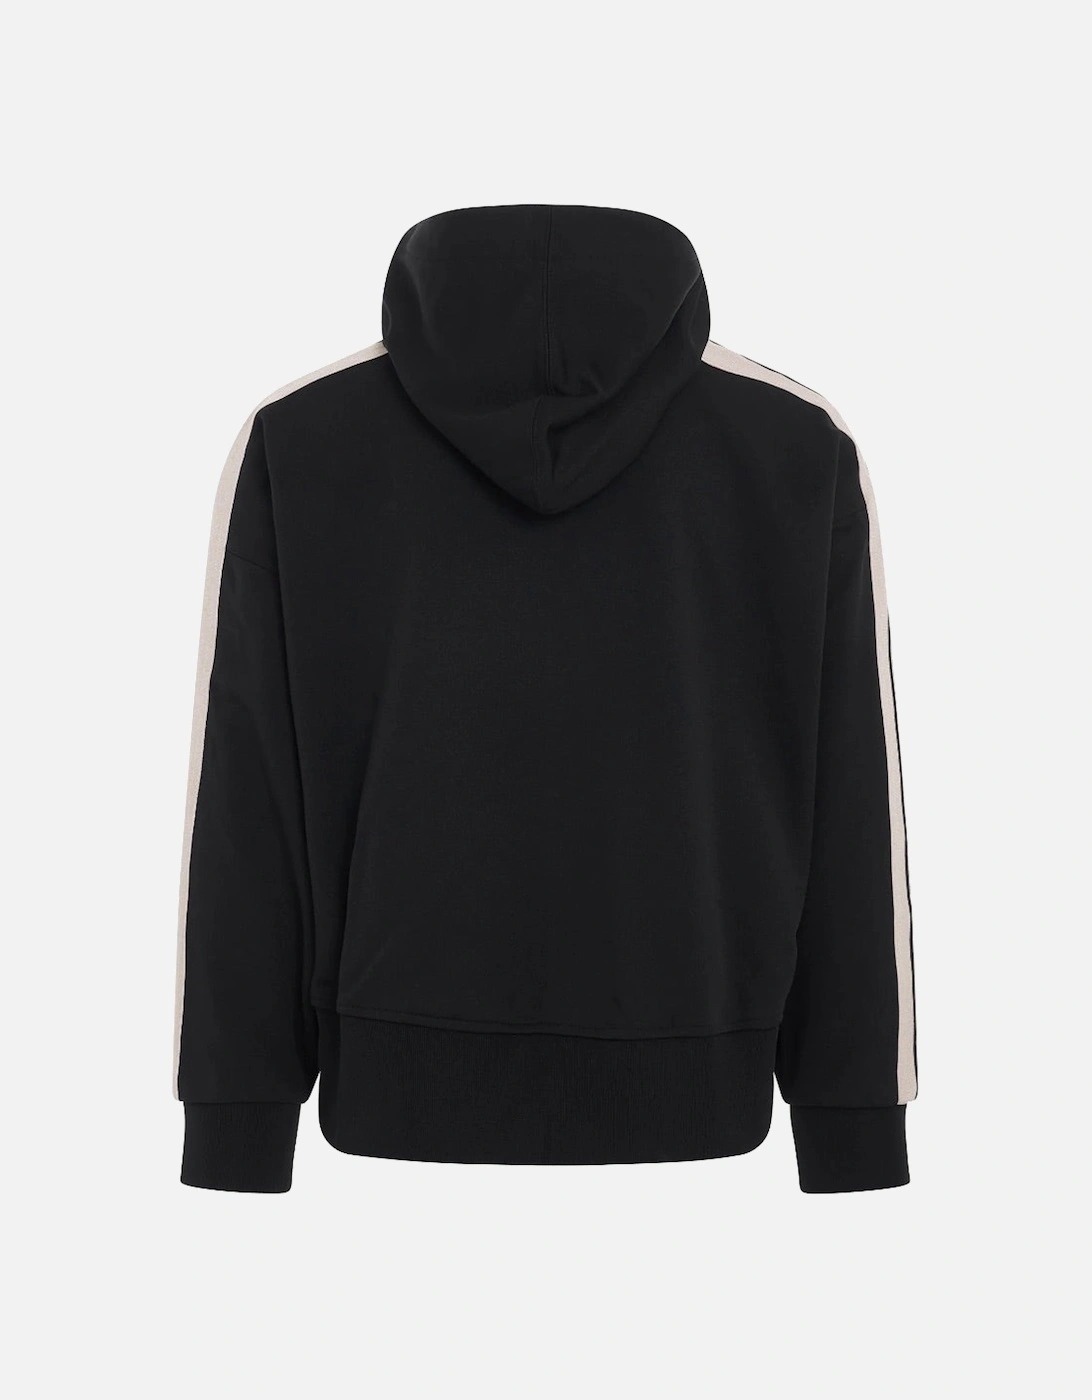 Zip Up Black Hooded Jacket